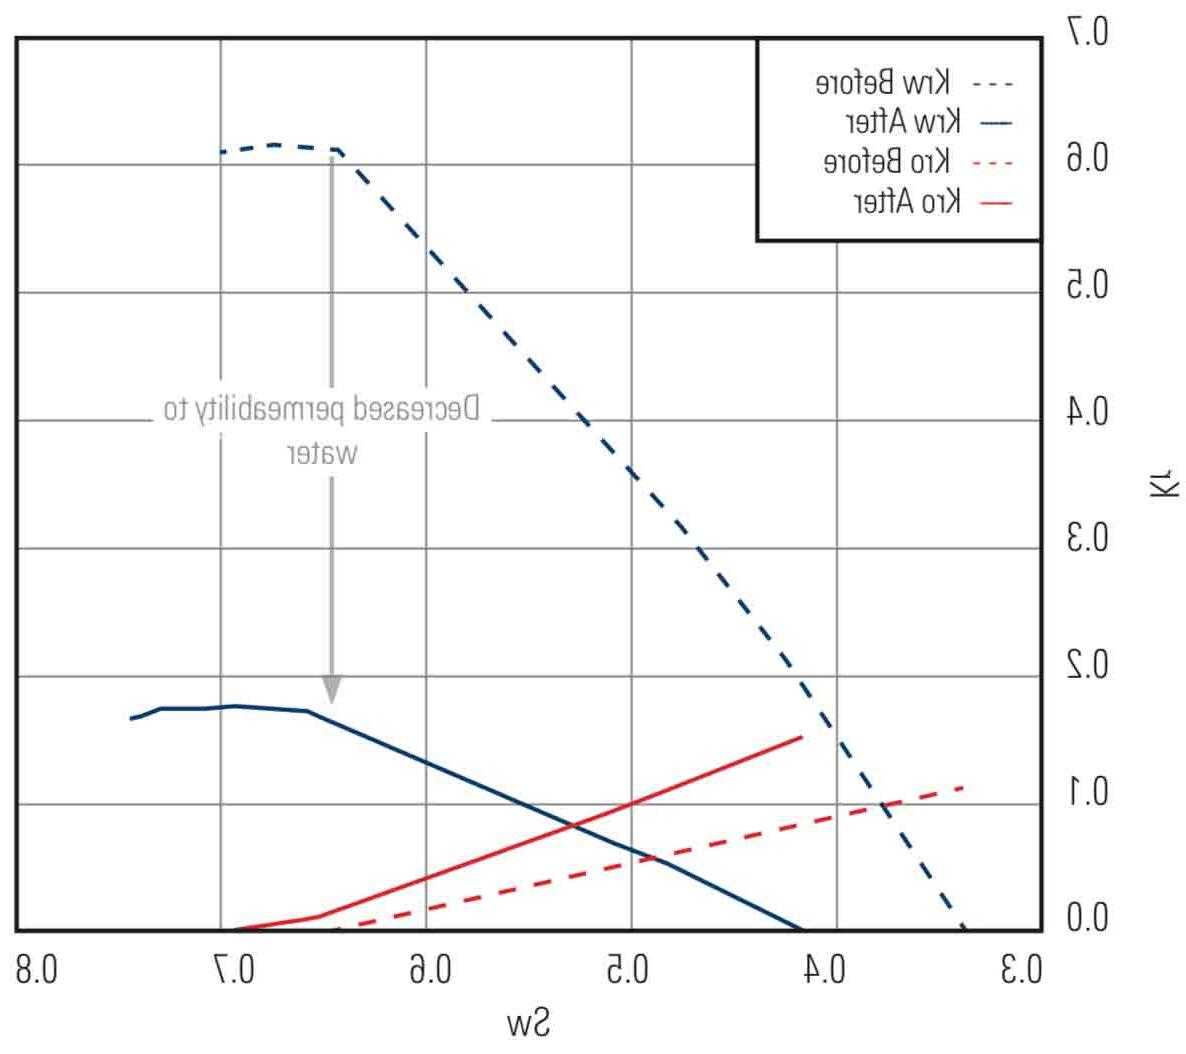 如图所示, ZONETROL XT系统将储层对水的相对渗透率降低了75%，而储层对油的渗透率几乎没有变化.